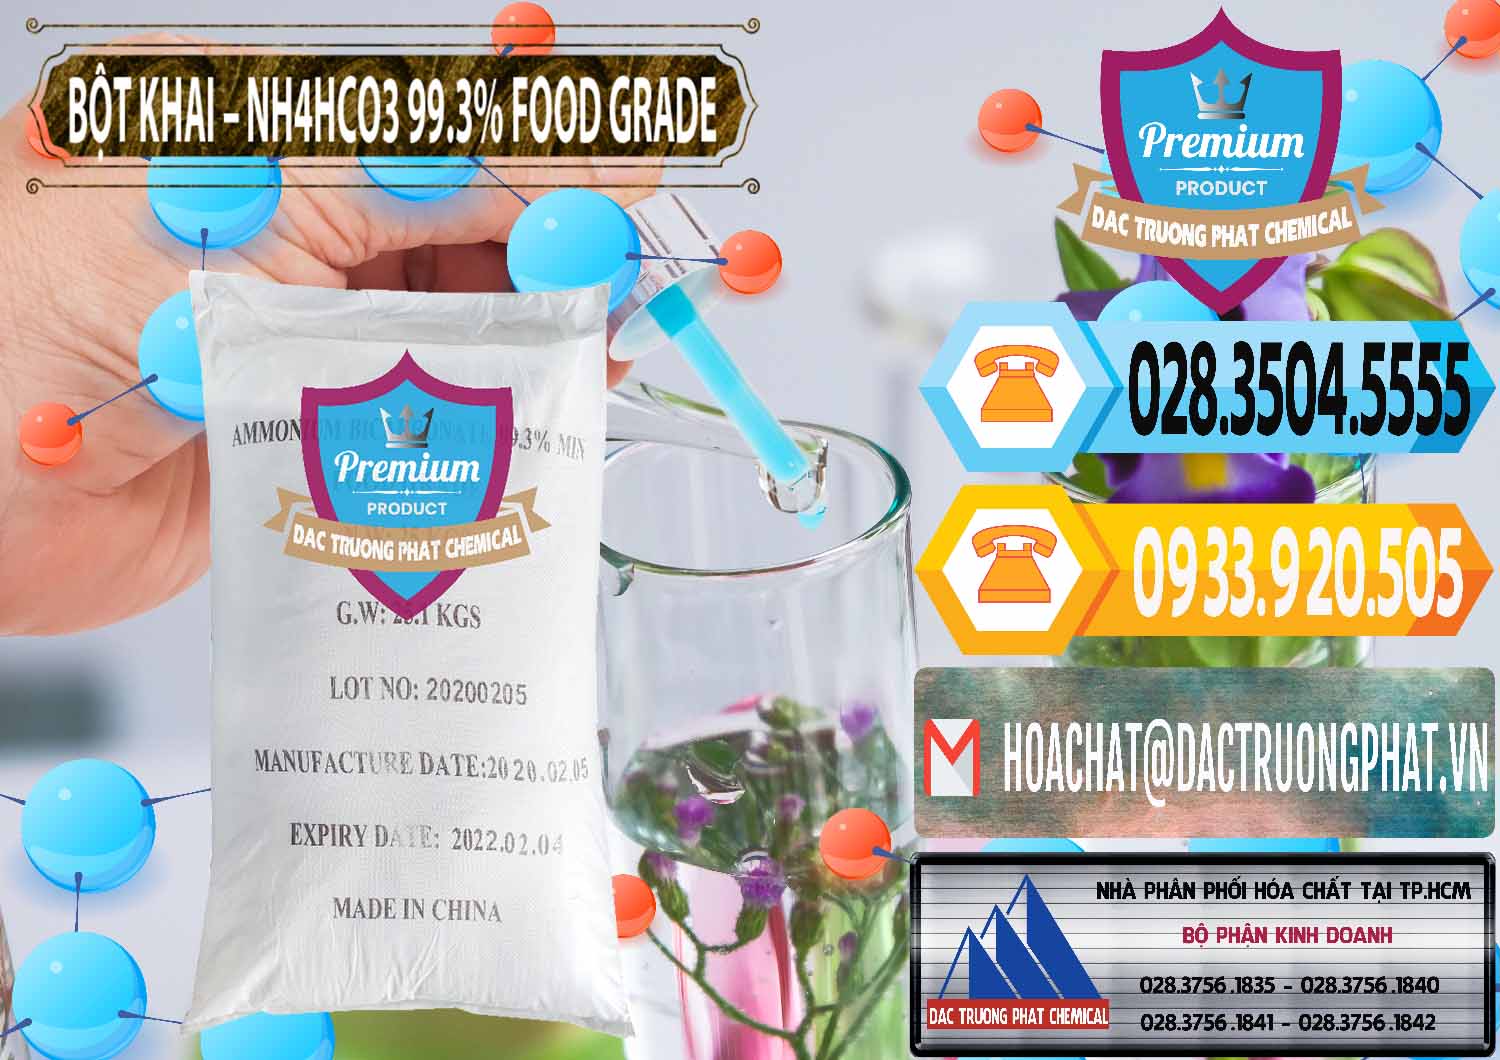 Đơn vị chuyên cung cấp - bán Ammonium Bicarbonate – Bột Khai NH4HCO3 Food Grade Trung Quốc China - 0019 - Công ty cung cấp _ kinh doanh hóa chất tại TP.HCM - hoachattayrua.net